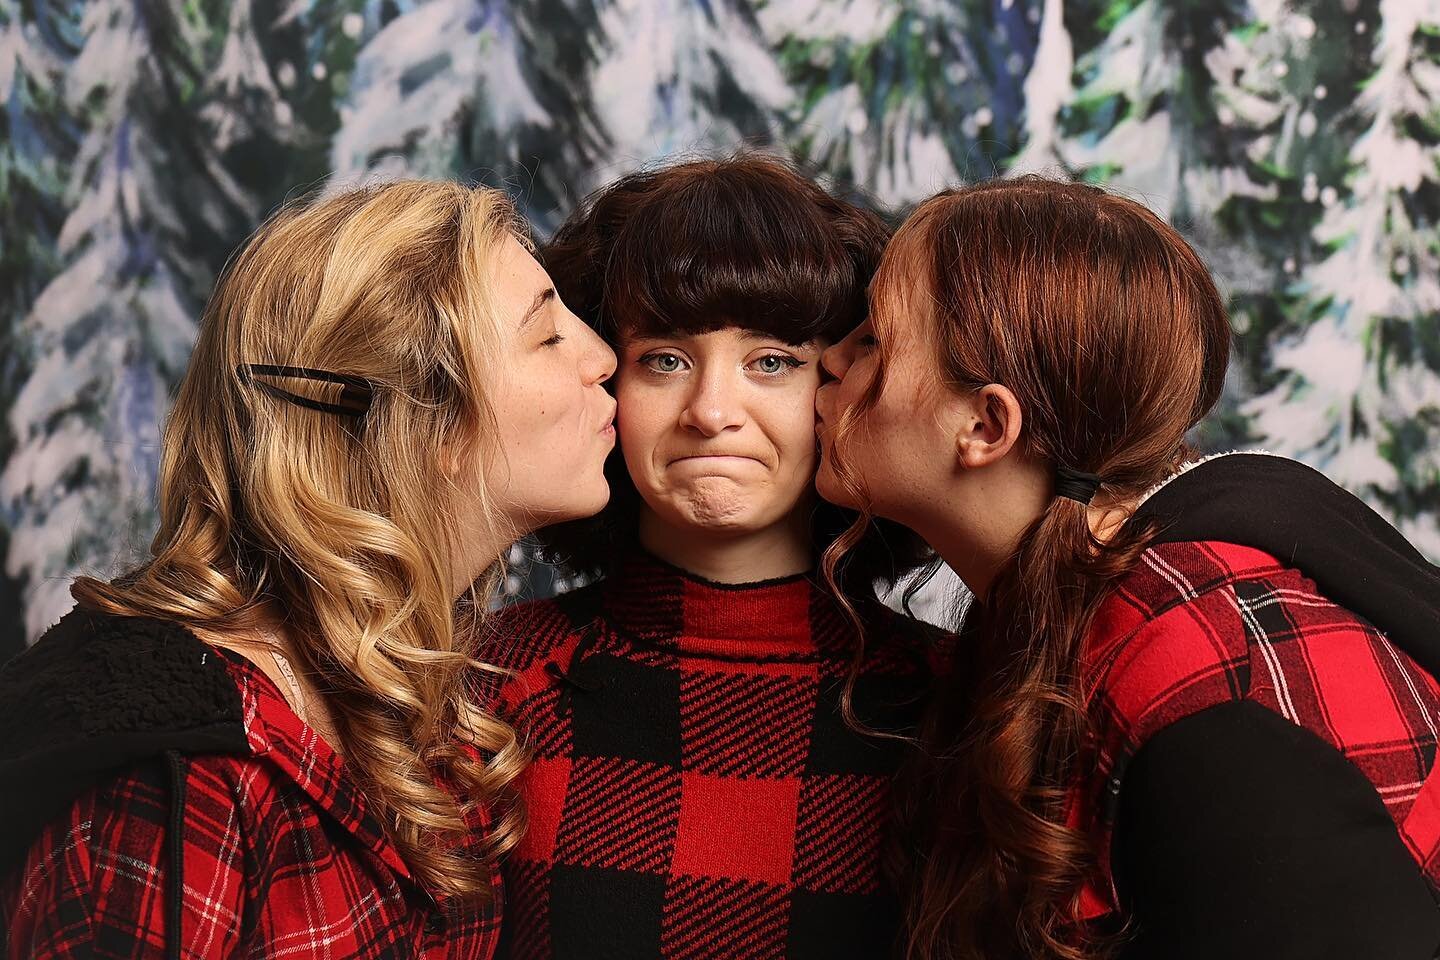 Merry kissmas #ThreeSistersAllStartWithP